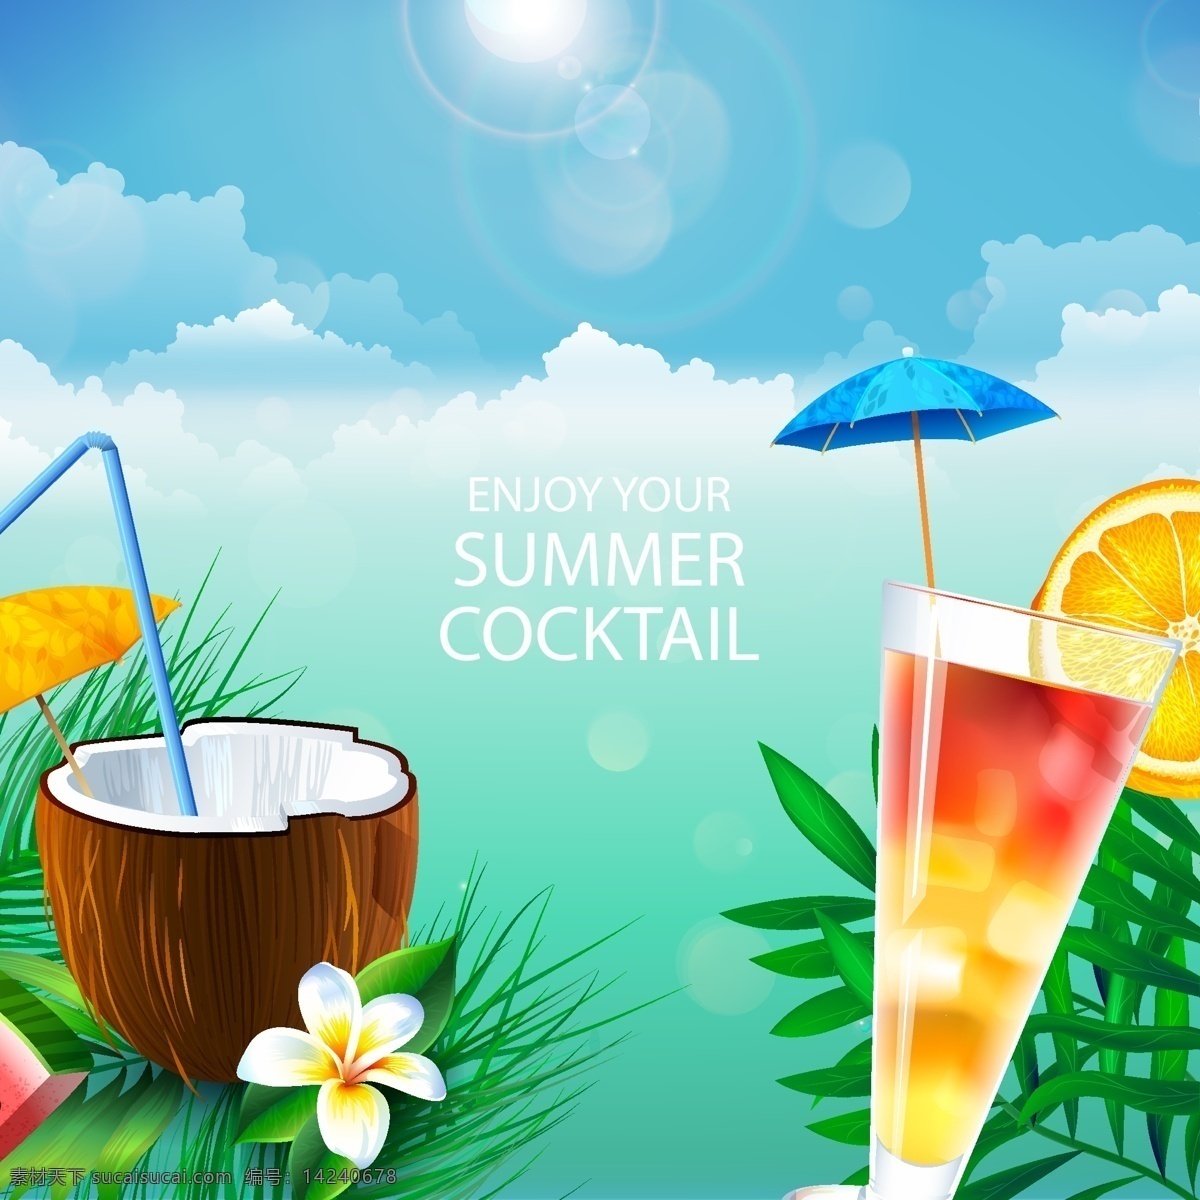 精美 夏季 鸡尾酒 椰 汁 矢量图 叶子 植物 太阳 椰汁 伞 热带 海水 鲜甜 夏天 云朵